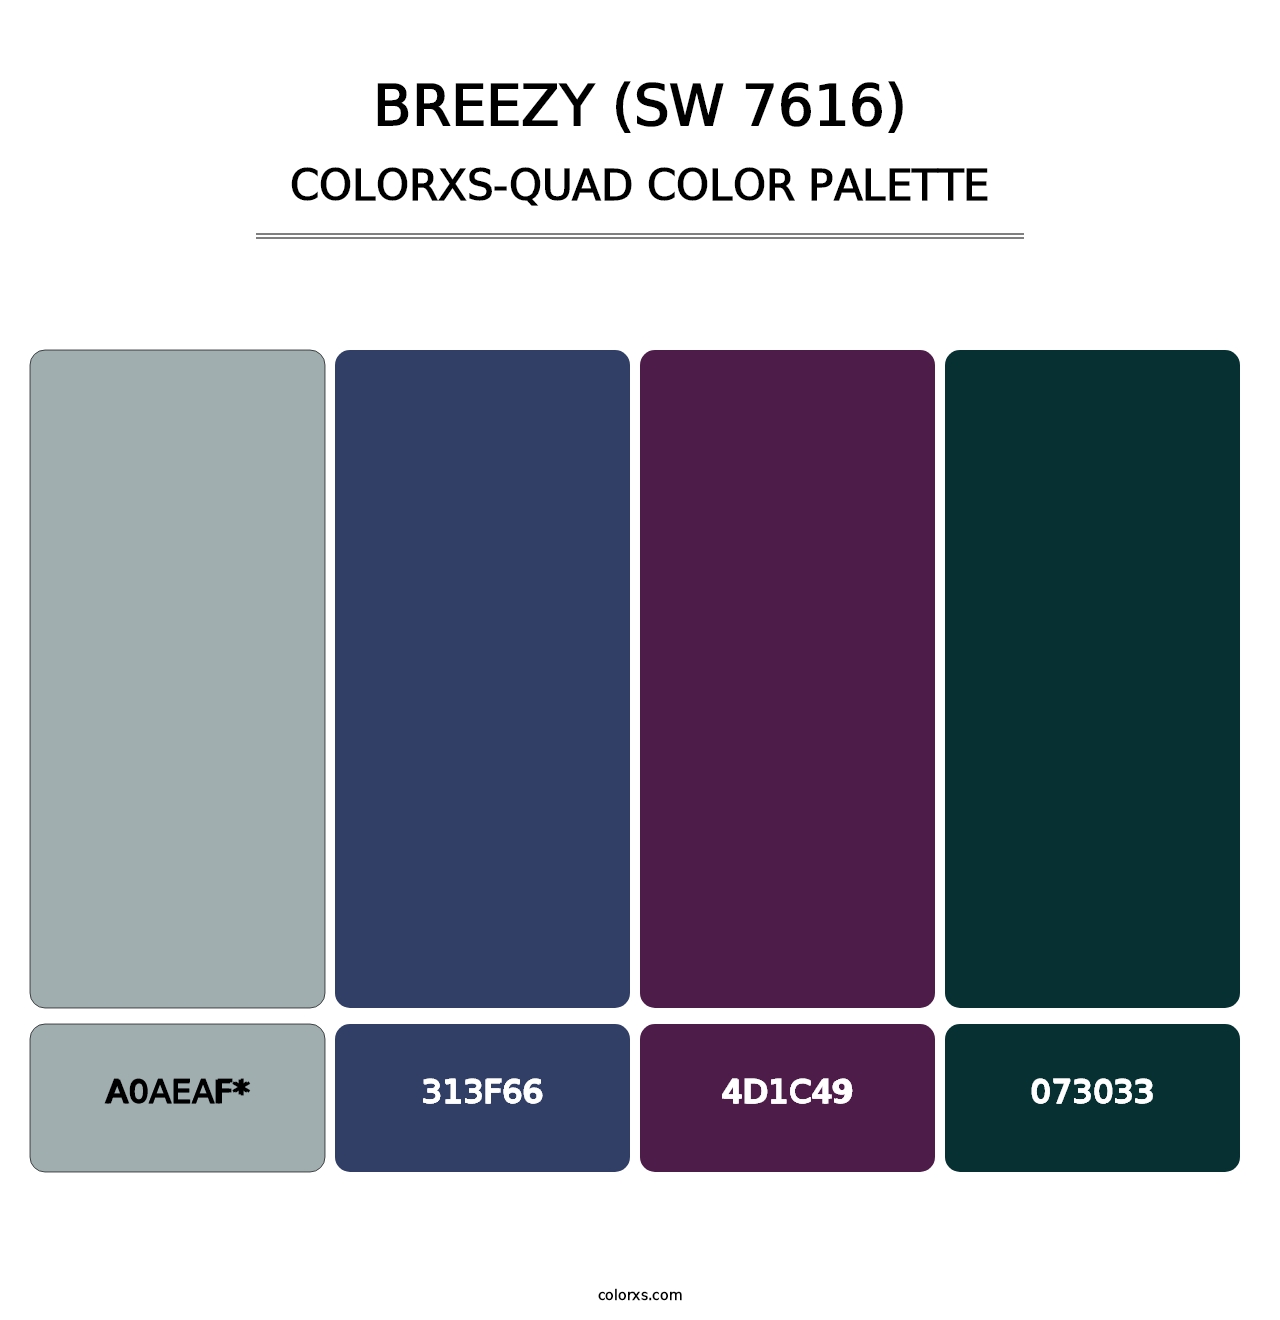 Breezy (SW 7616) - Colorxs Quad Palette